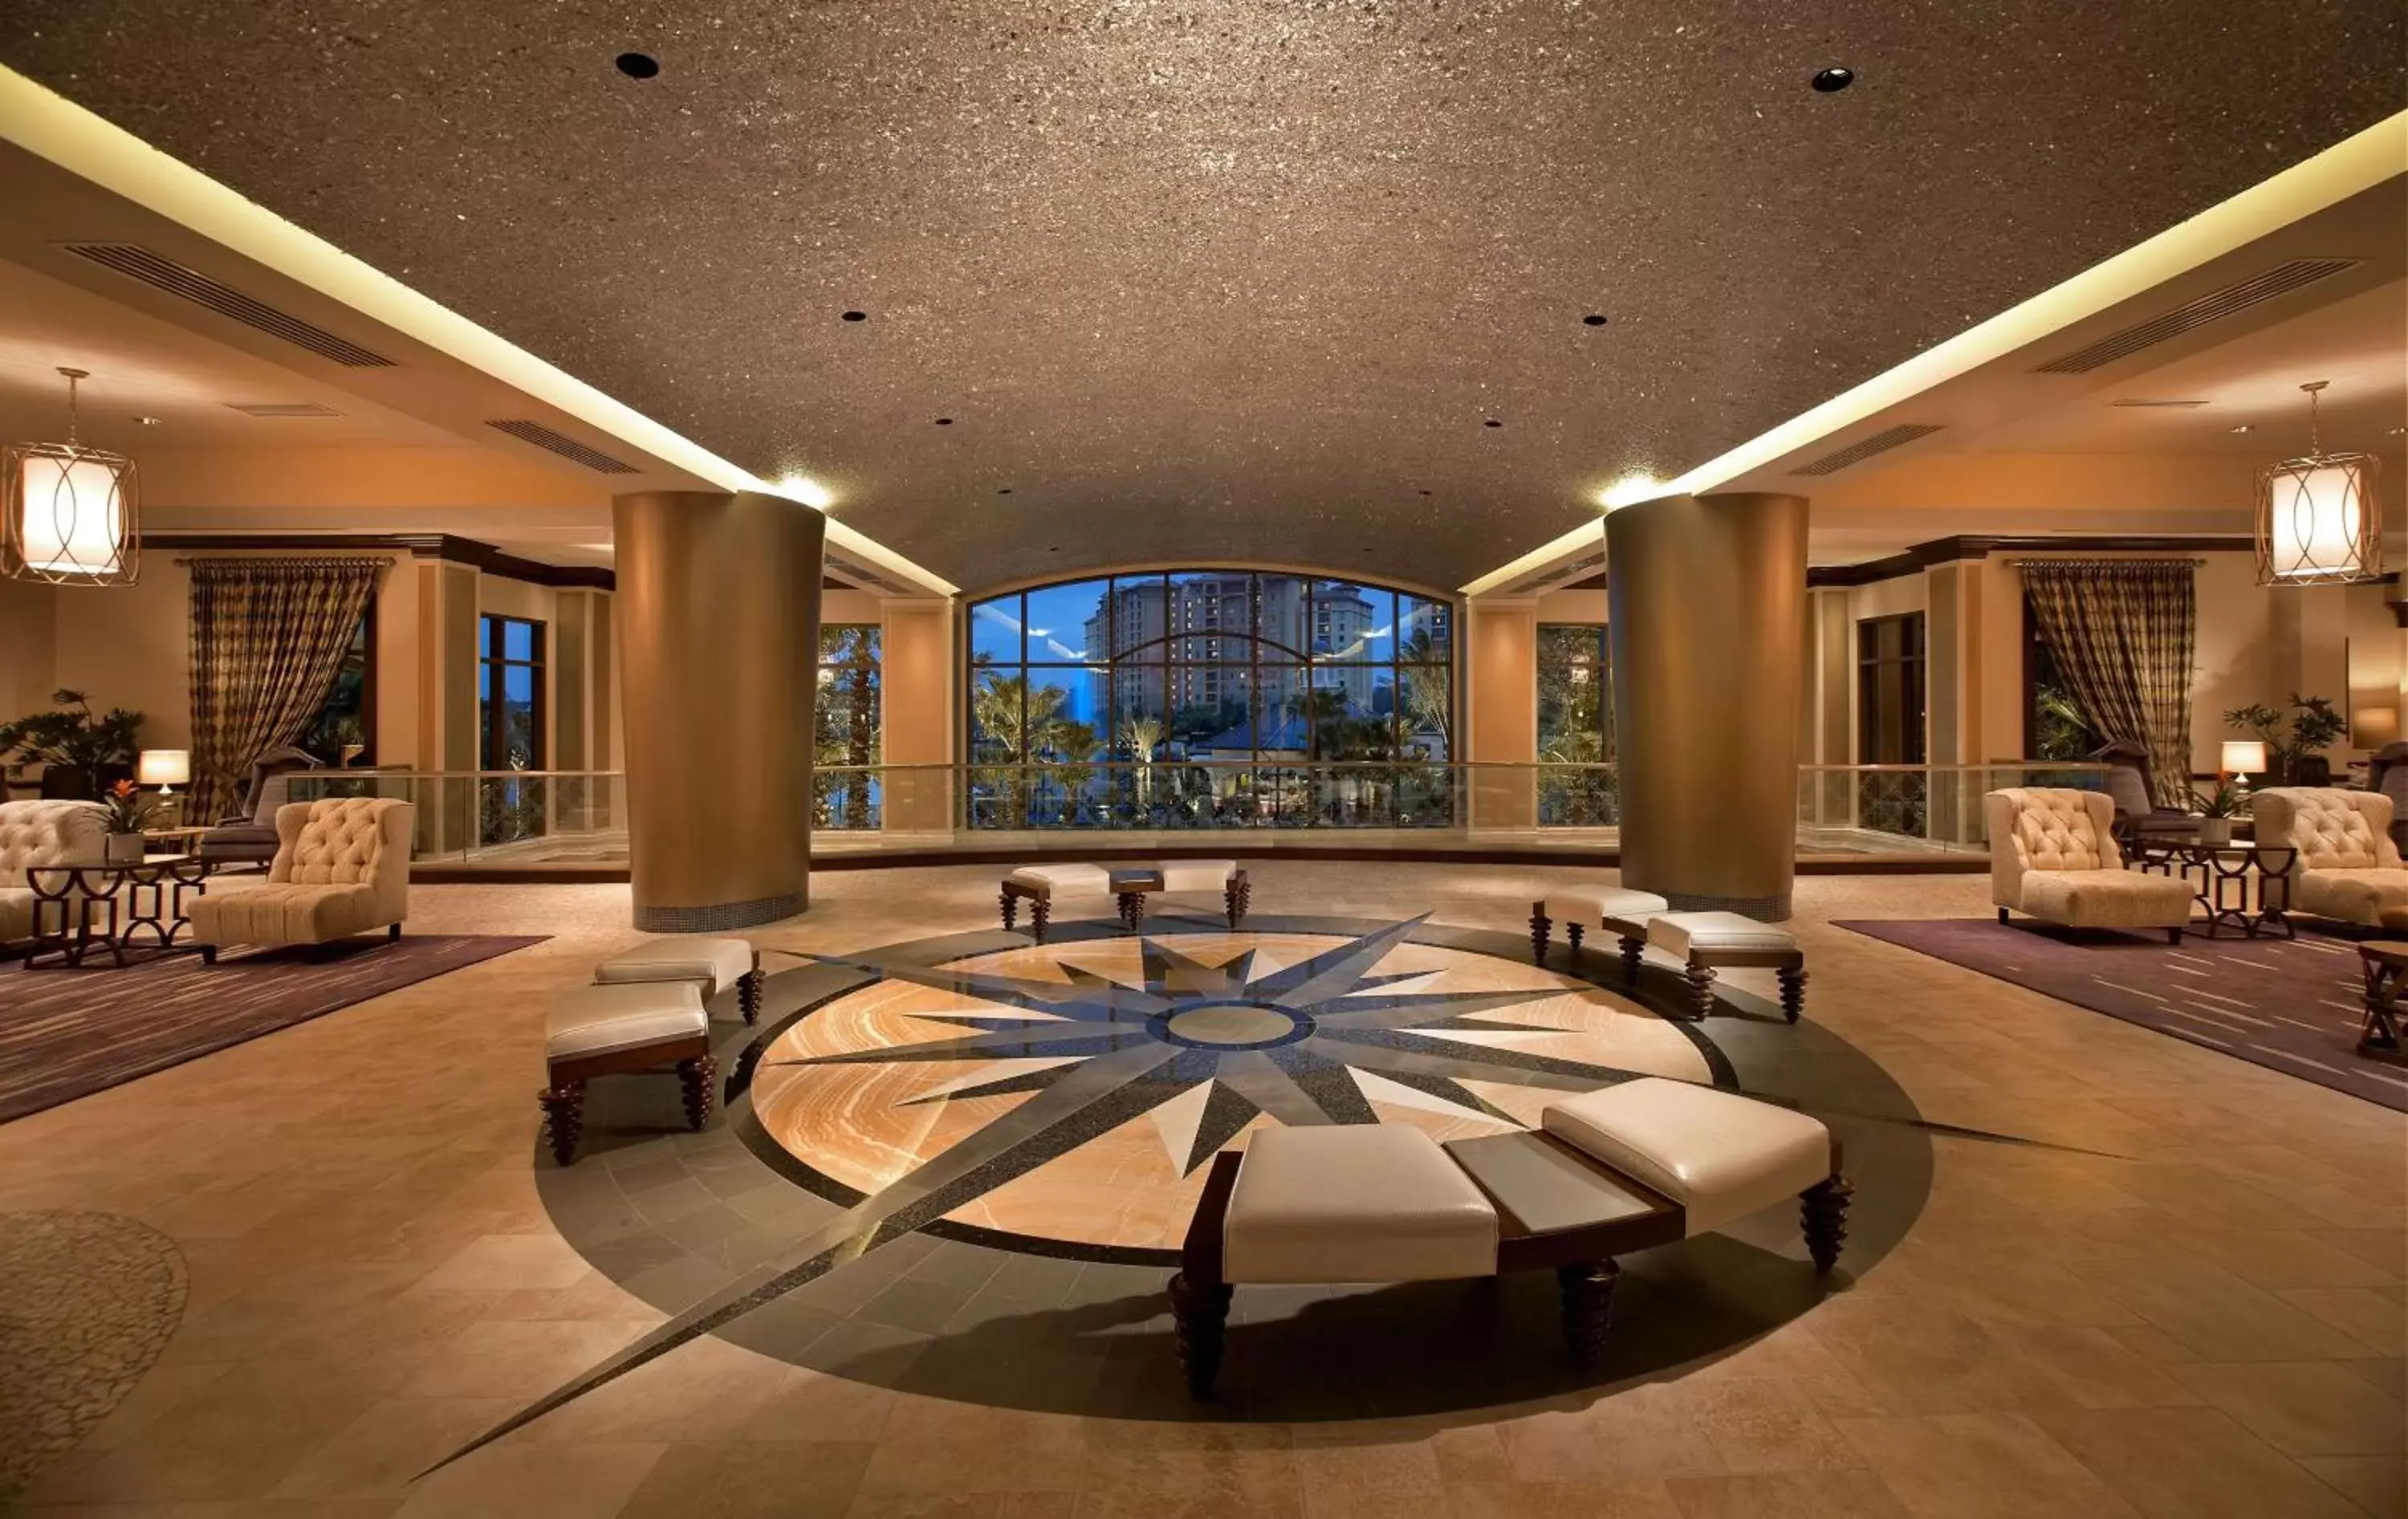 Lobby or reception, Lobby/Reception in Wyndham Grand Orlando Resort Bonnet Creek